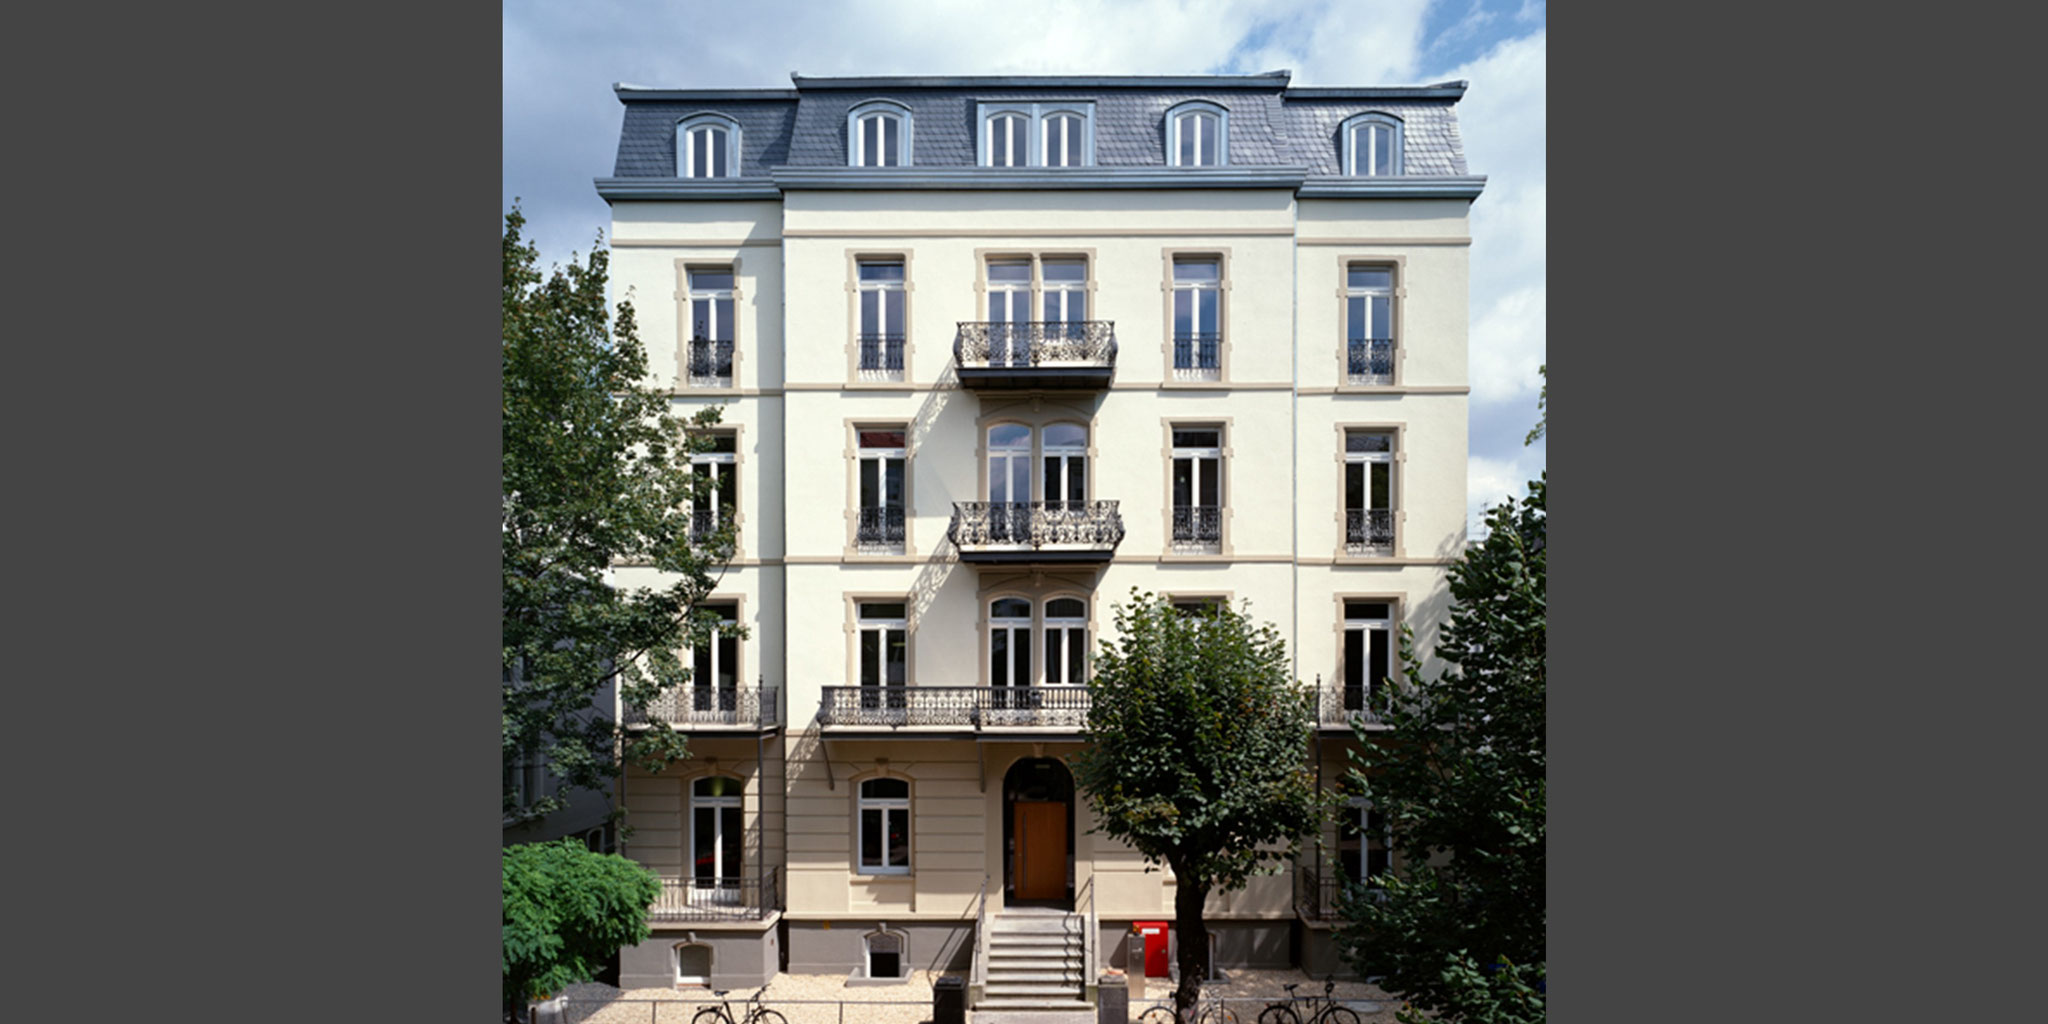 Architekten Frankfurt – Neubau und Sanierung Bürogebäude "Heyde Campus" in Bad Nauheim, Architekturbüro Frick.Reichert Architekten